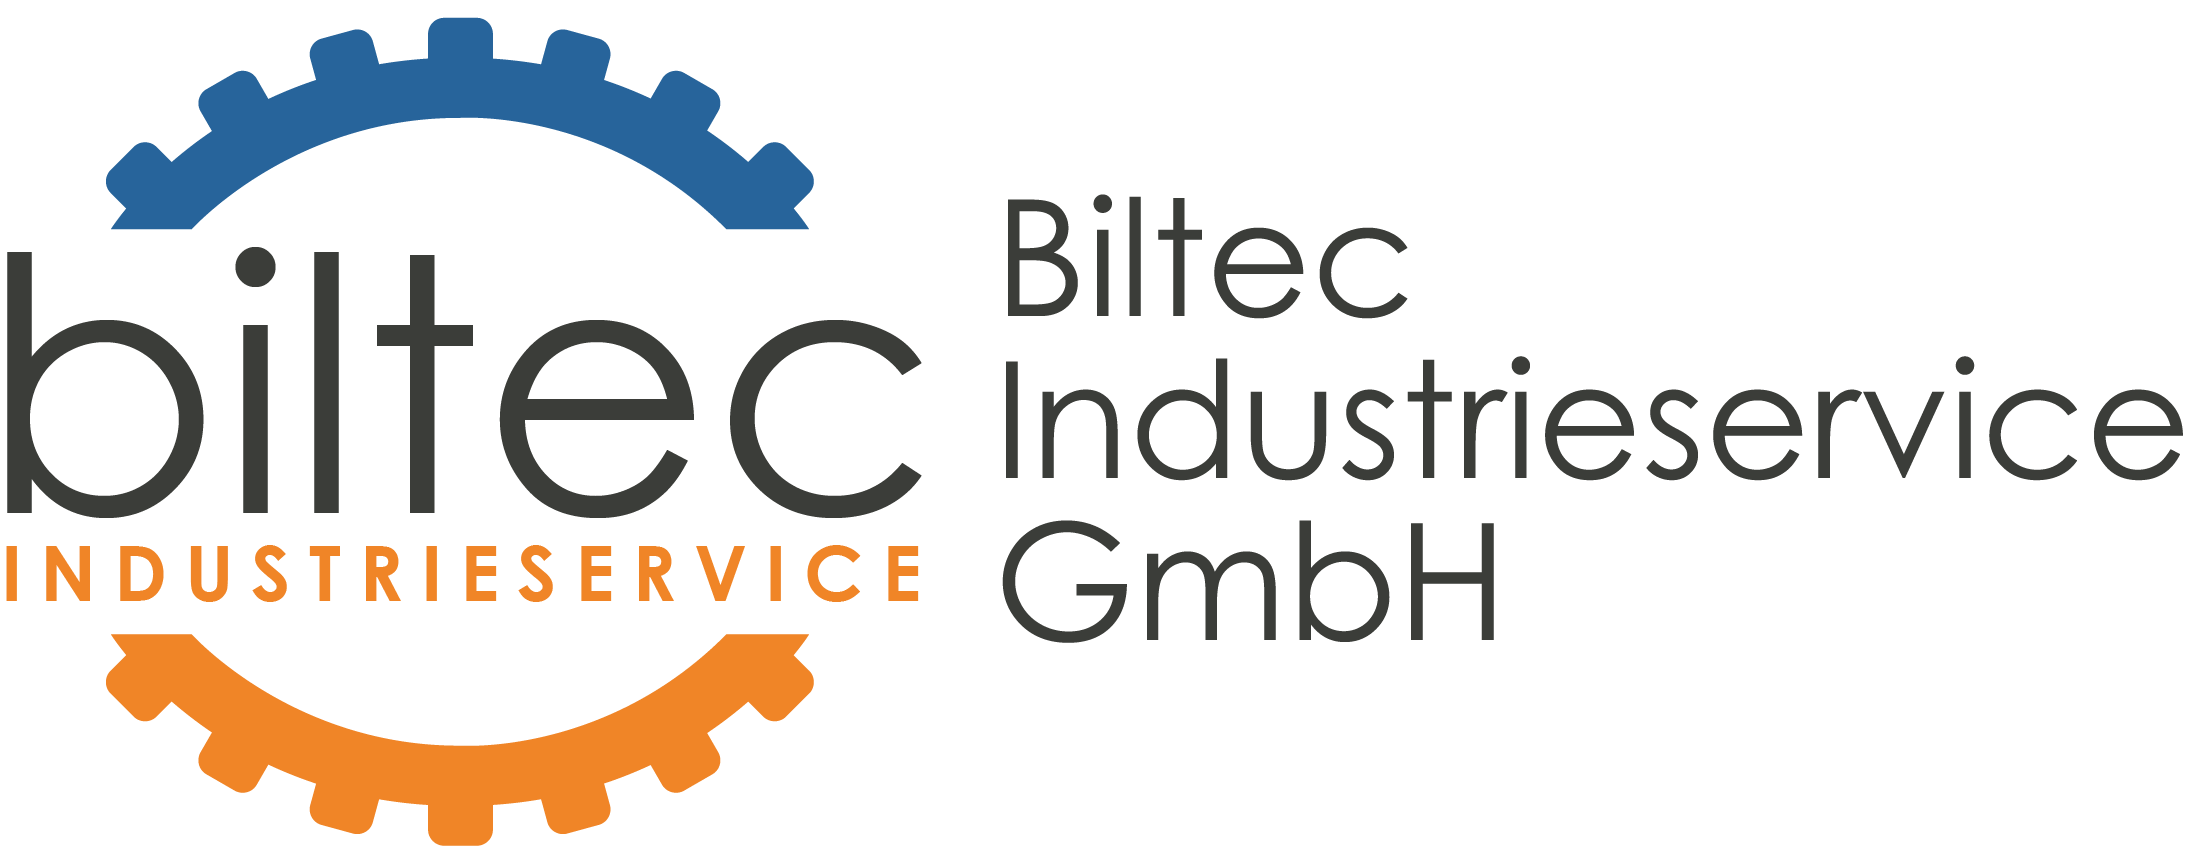 Biltec Industrieservice GmbH